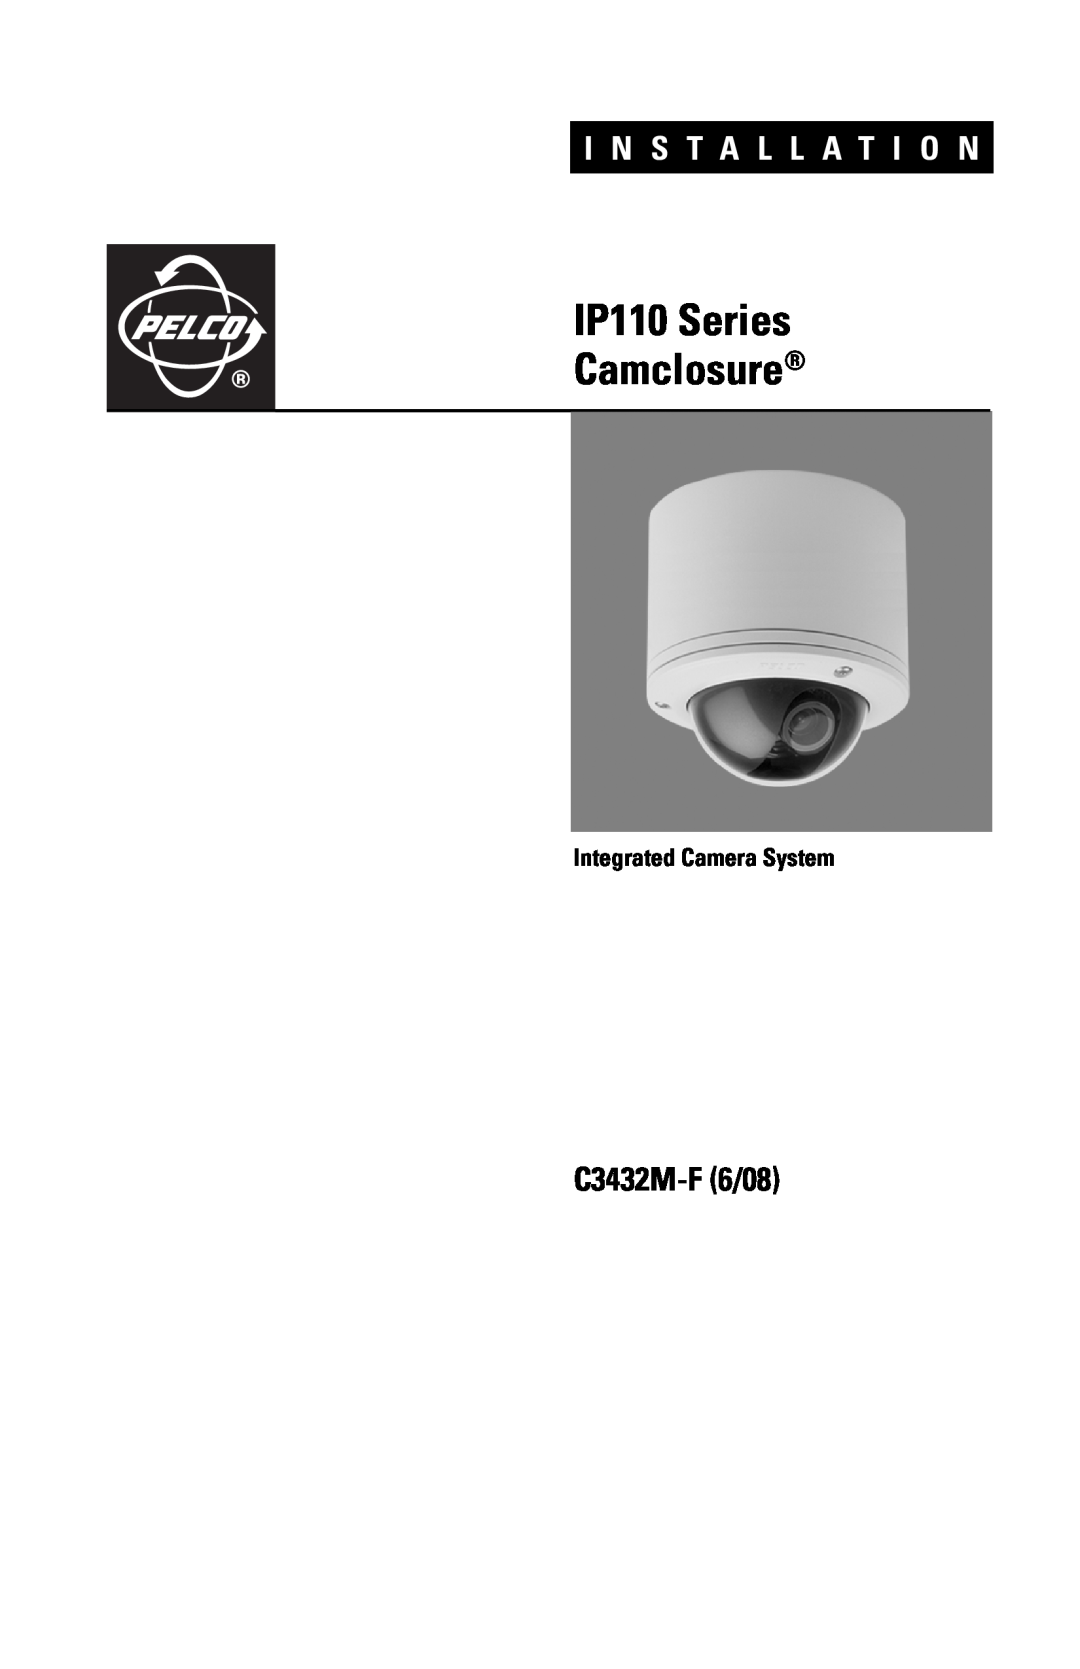 Pelco manual IP110 Series Camclosure, C3432M-F6/08, Integrated Camera System, I N S T A L L A T I O N 